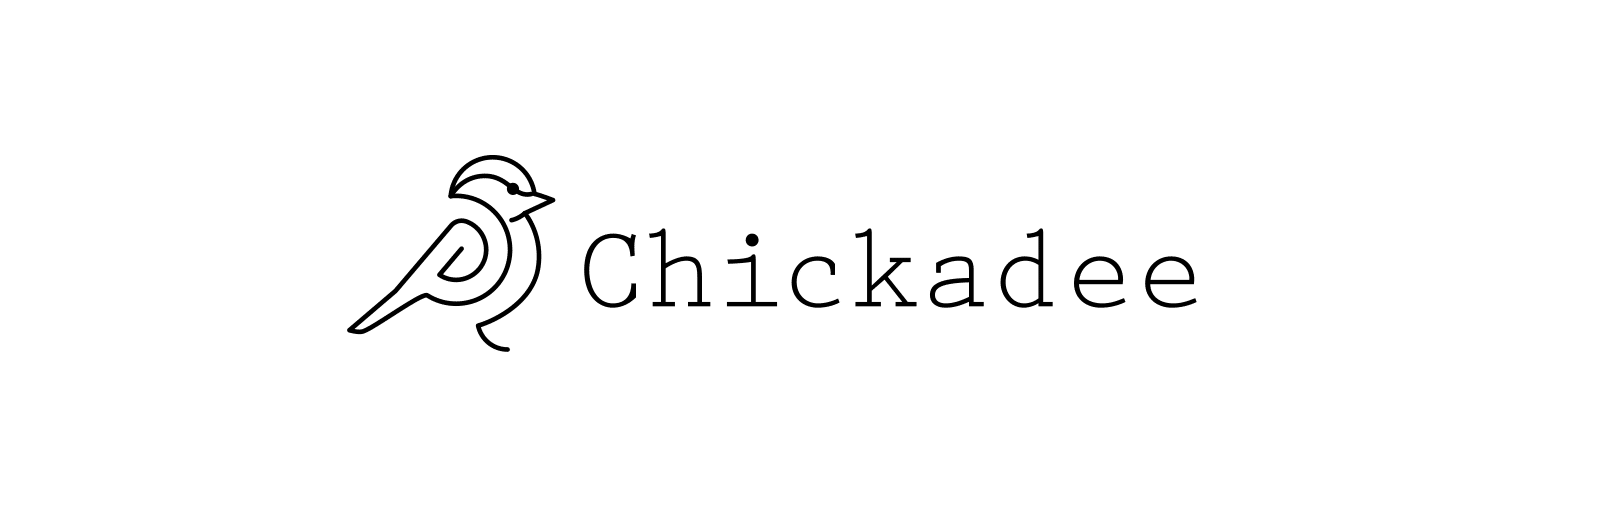 logo for chickadee